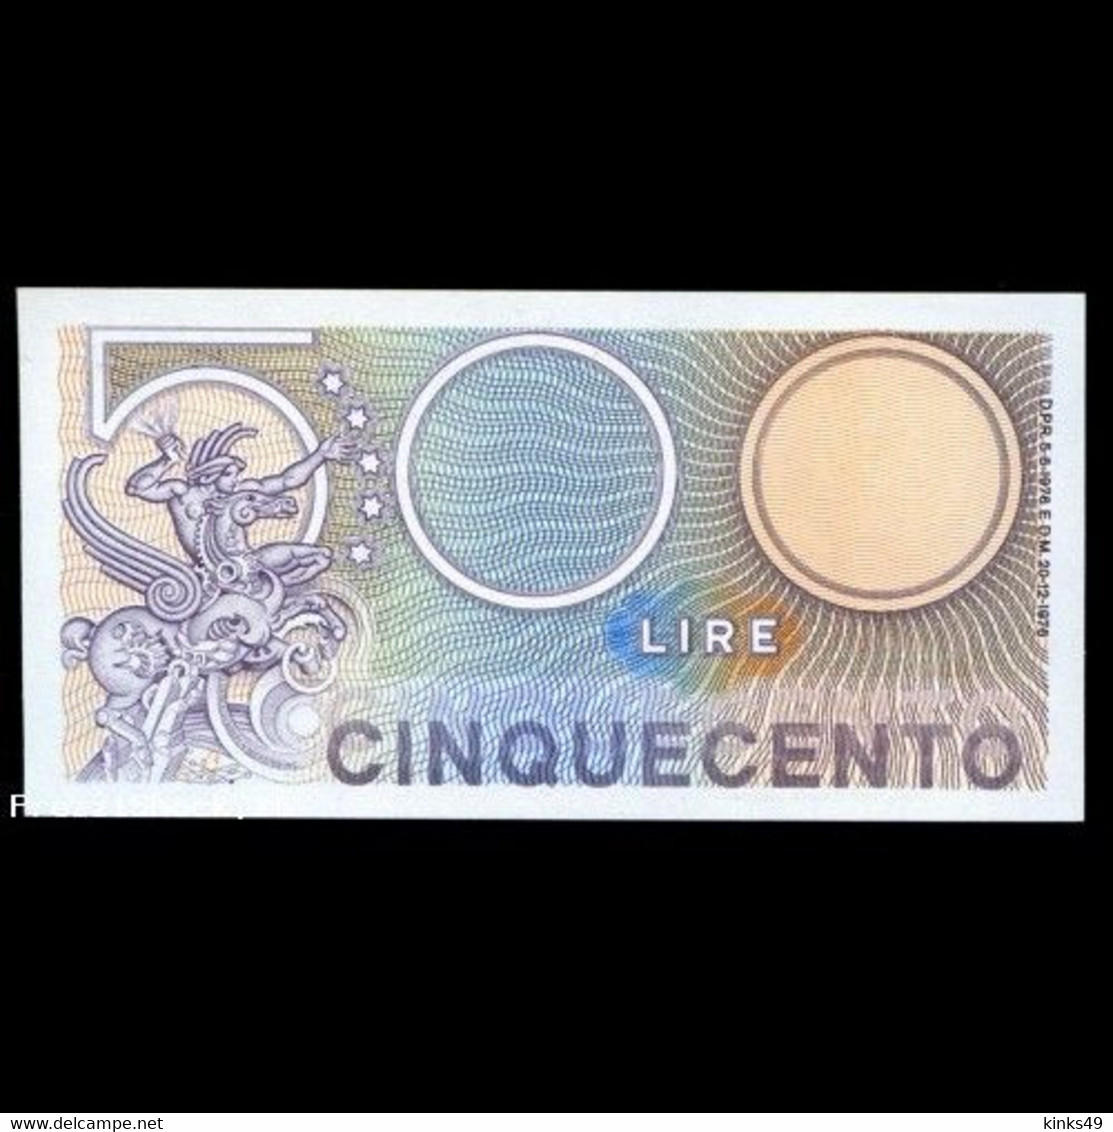 073> BANCONOTA ORIGINALE 500 LIRE "Mercurio" Di E. VANGELLI - Fior Di Conio - 500 Lire